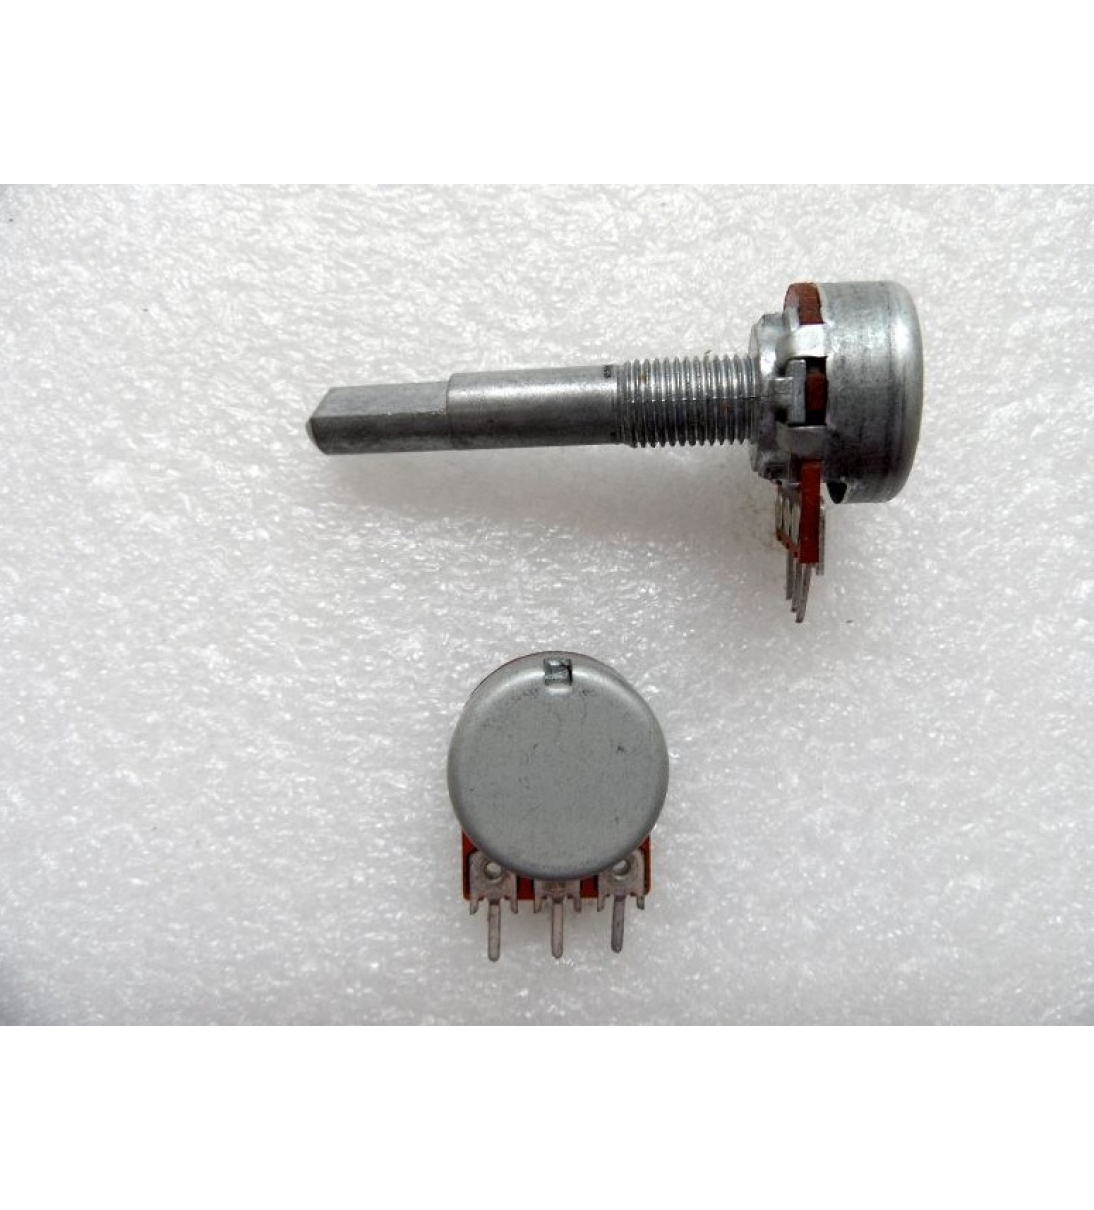 Potenziometro originale Behringer da 1KC perno lungo in metallo con rotazione a "click" 